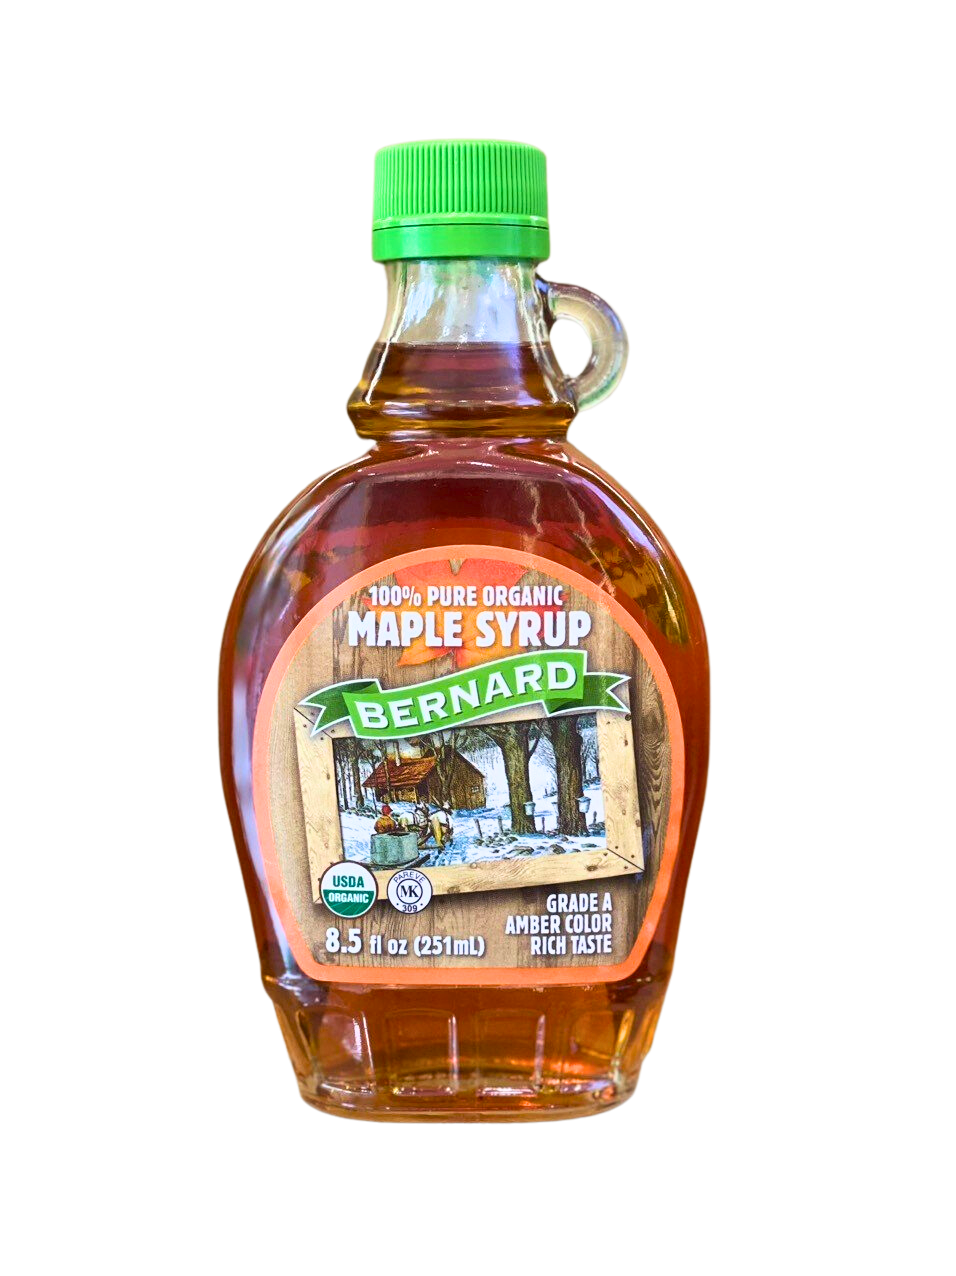 Siro cây phong hữu cơ nguyên chất BERNARD - Pure Organic Maple Syrup 251ml